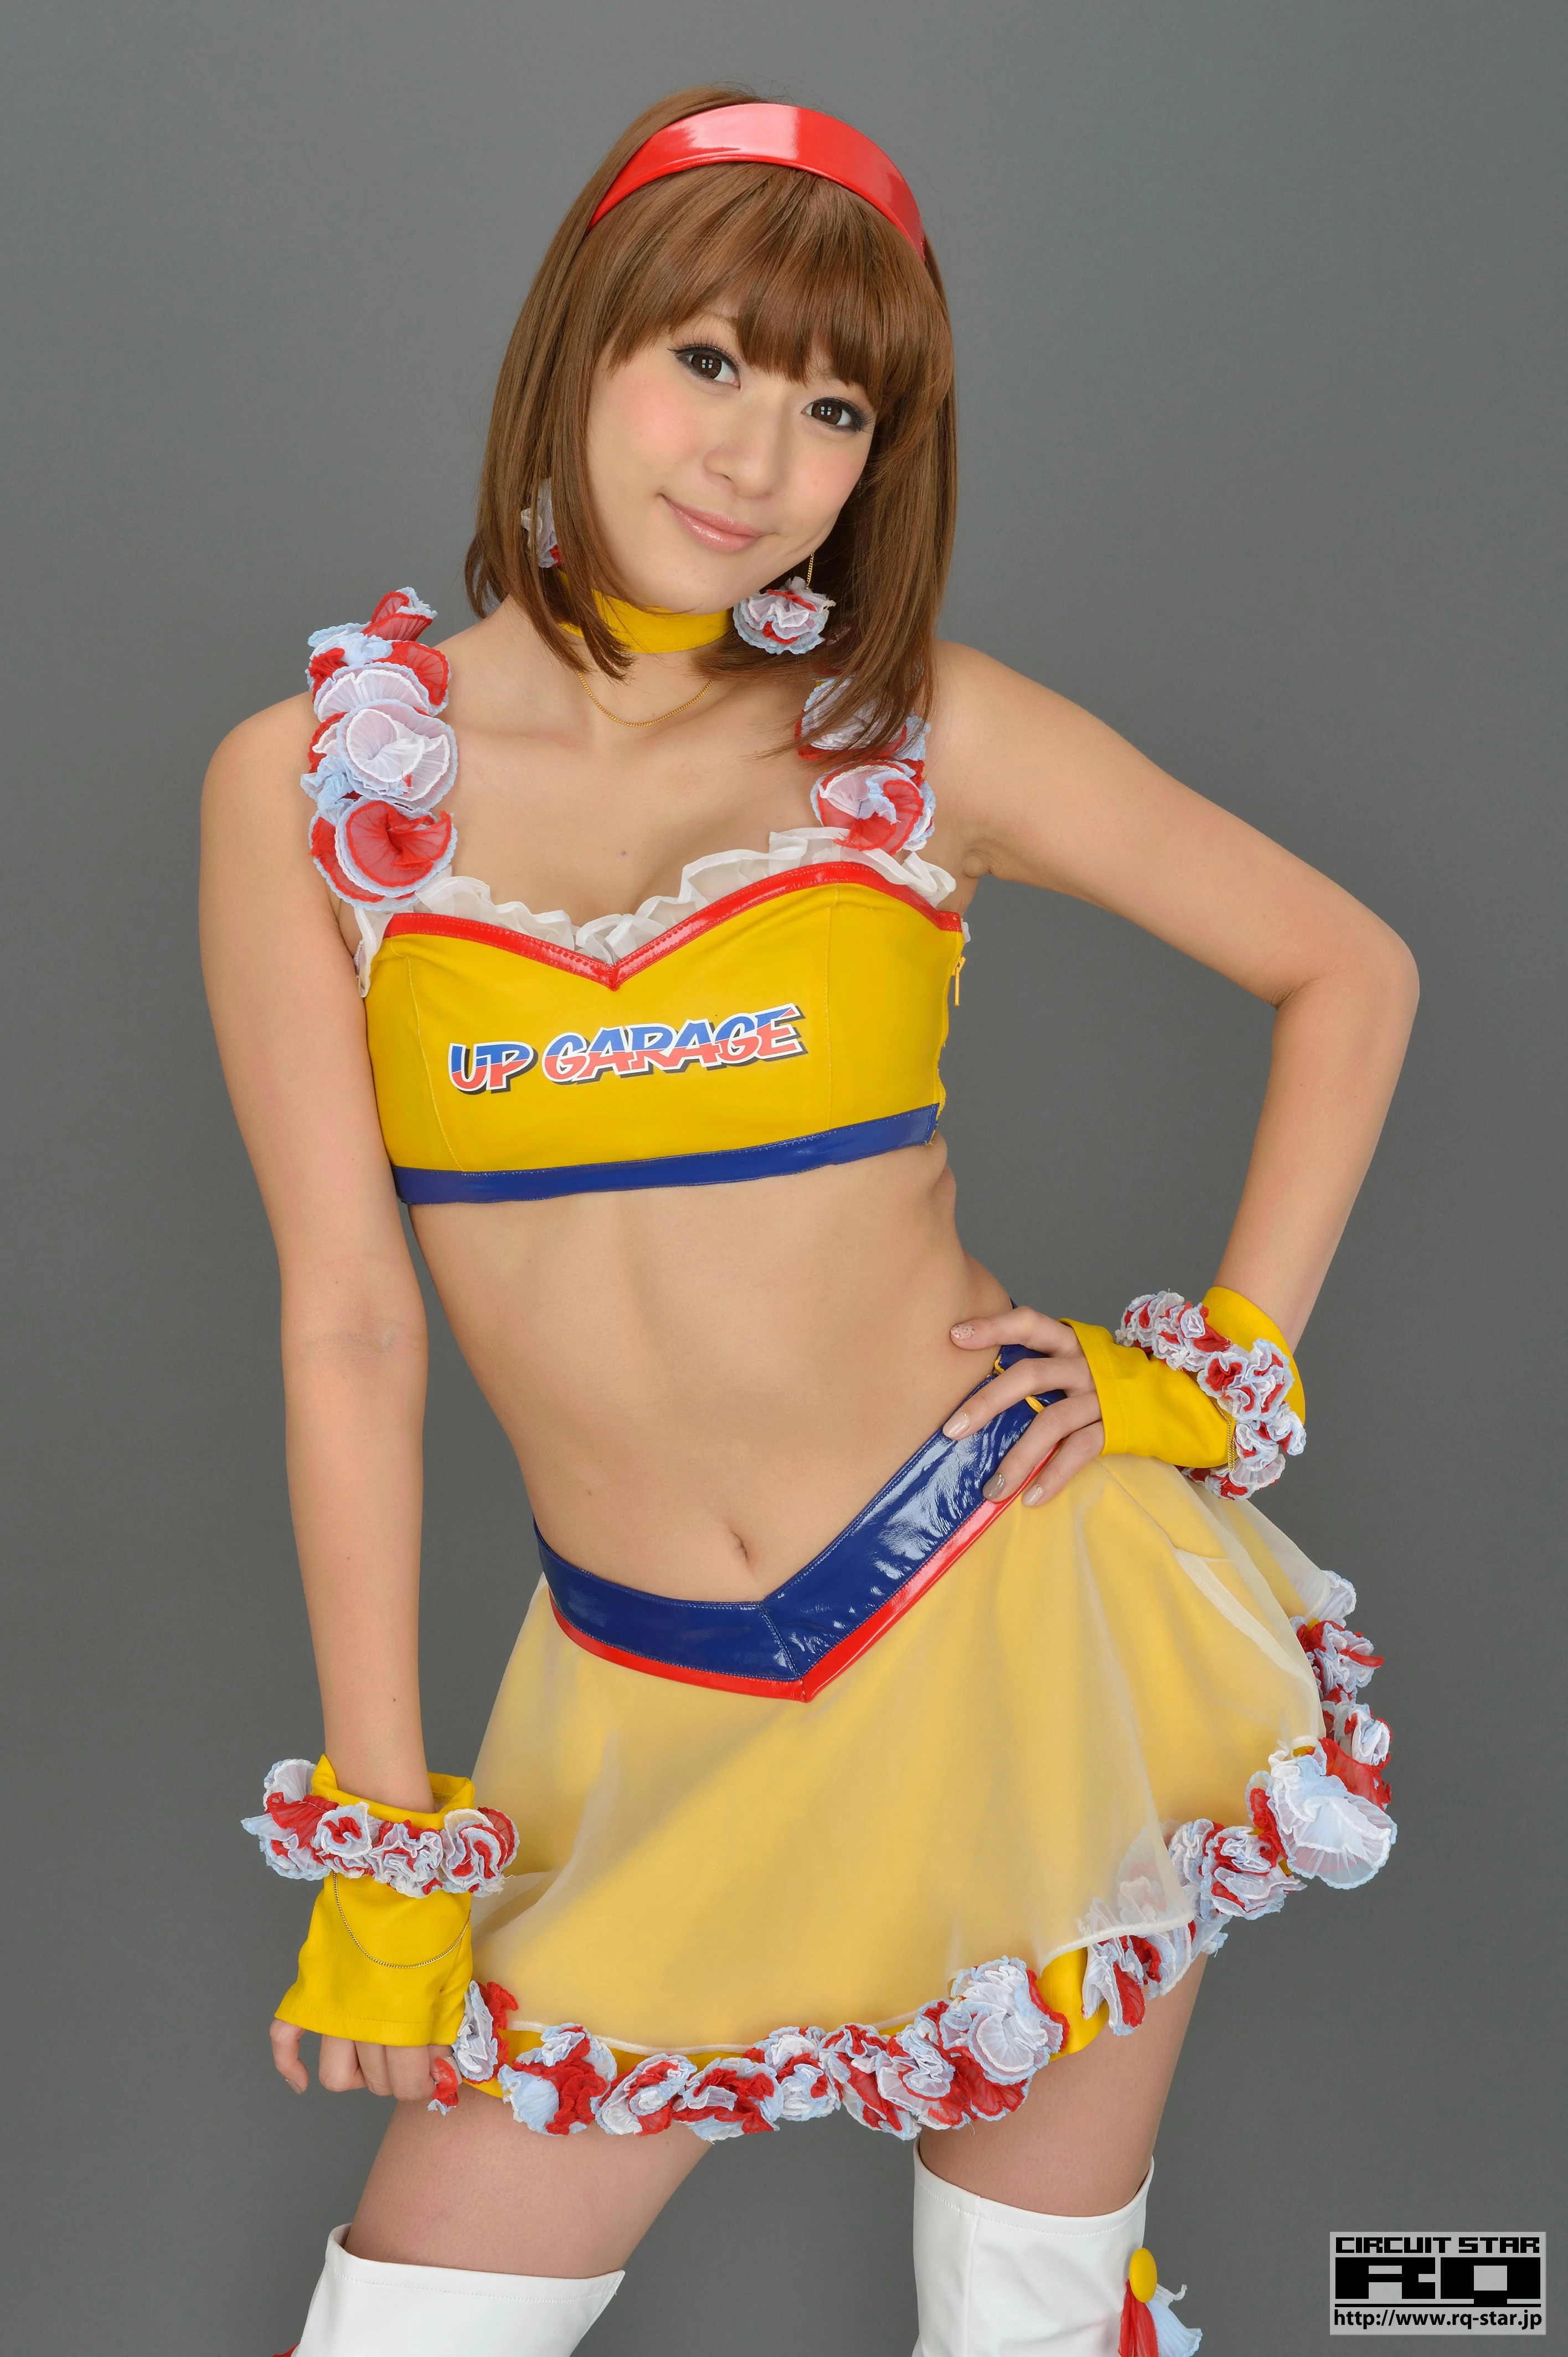 [RQ-STAR写真]NO.00733 日本赛车女郎 しばはらまい（柴原麻衣，Mai Shibahara）黄色制服加短裙性感写真集,025